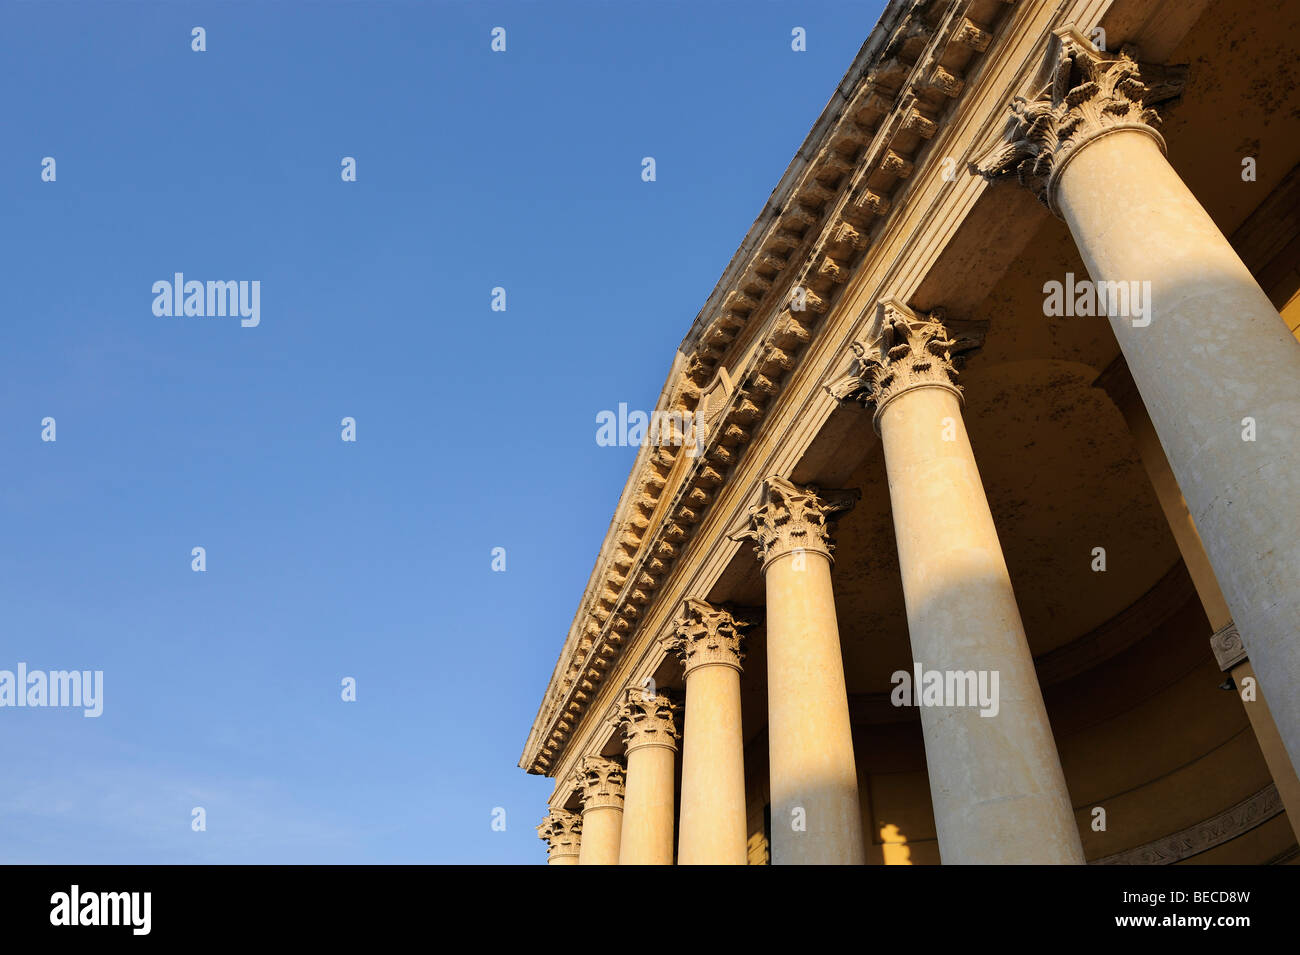 Detalles arquitectónicos, las columnas del Palazzo Barbieri, el Ayuntamiento de Verona, Lago de Garda, Italia, Europa Foto de stock